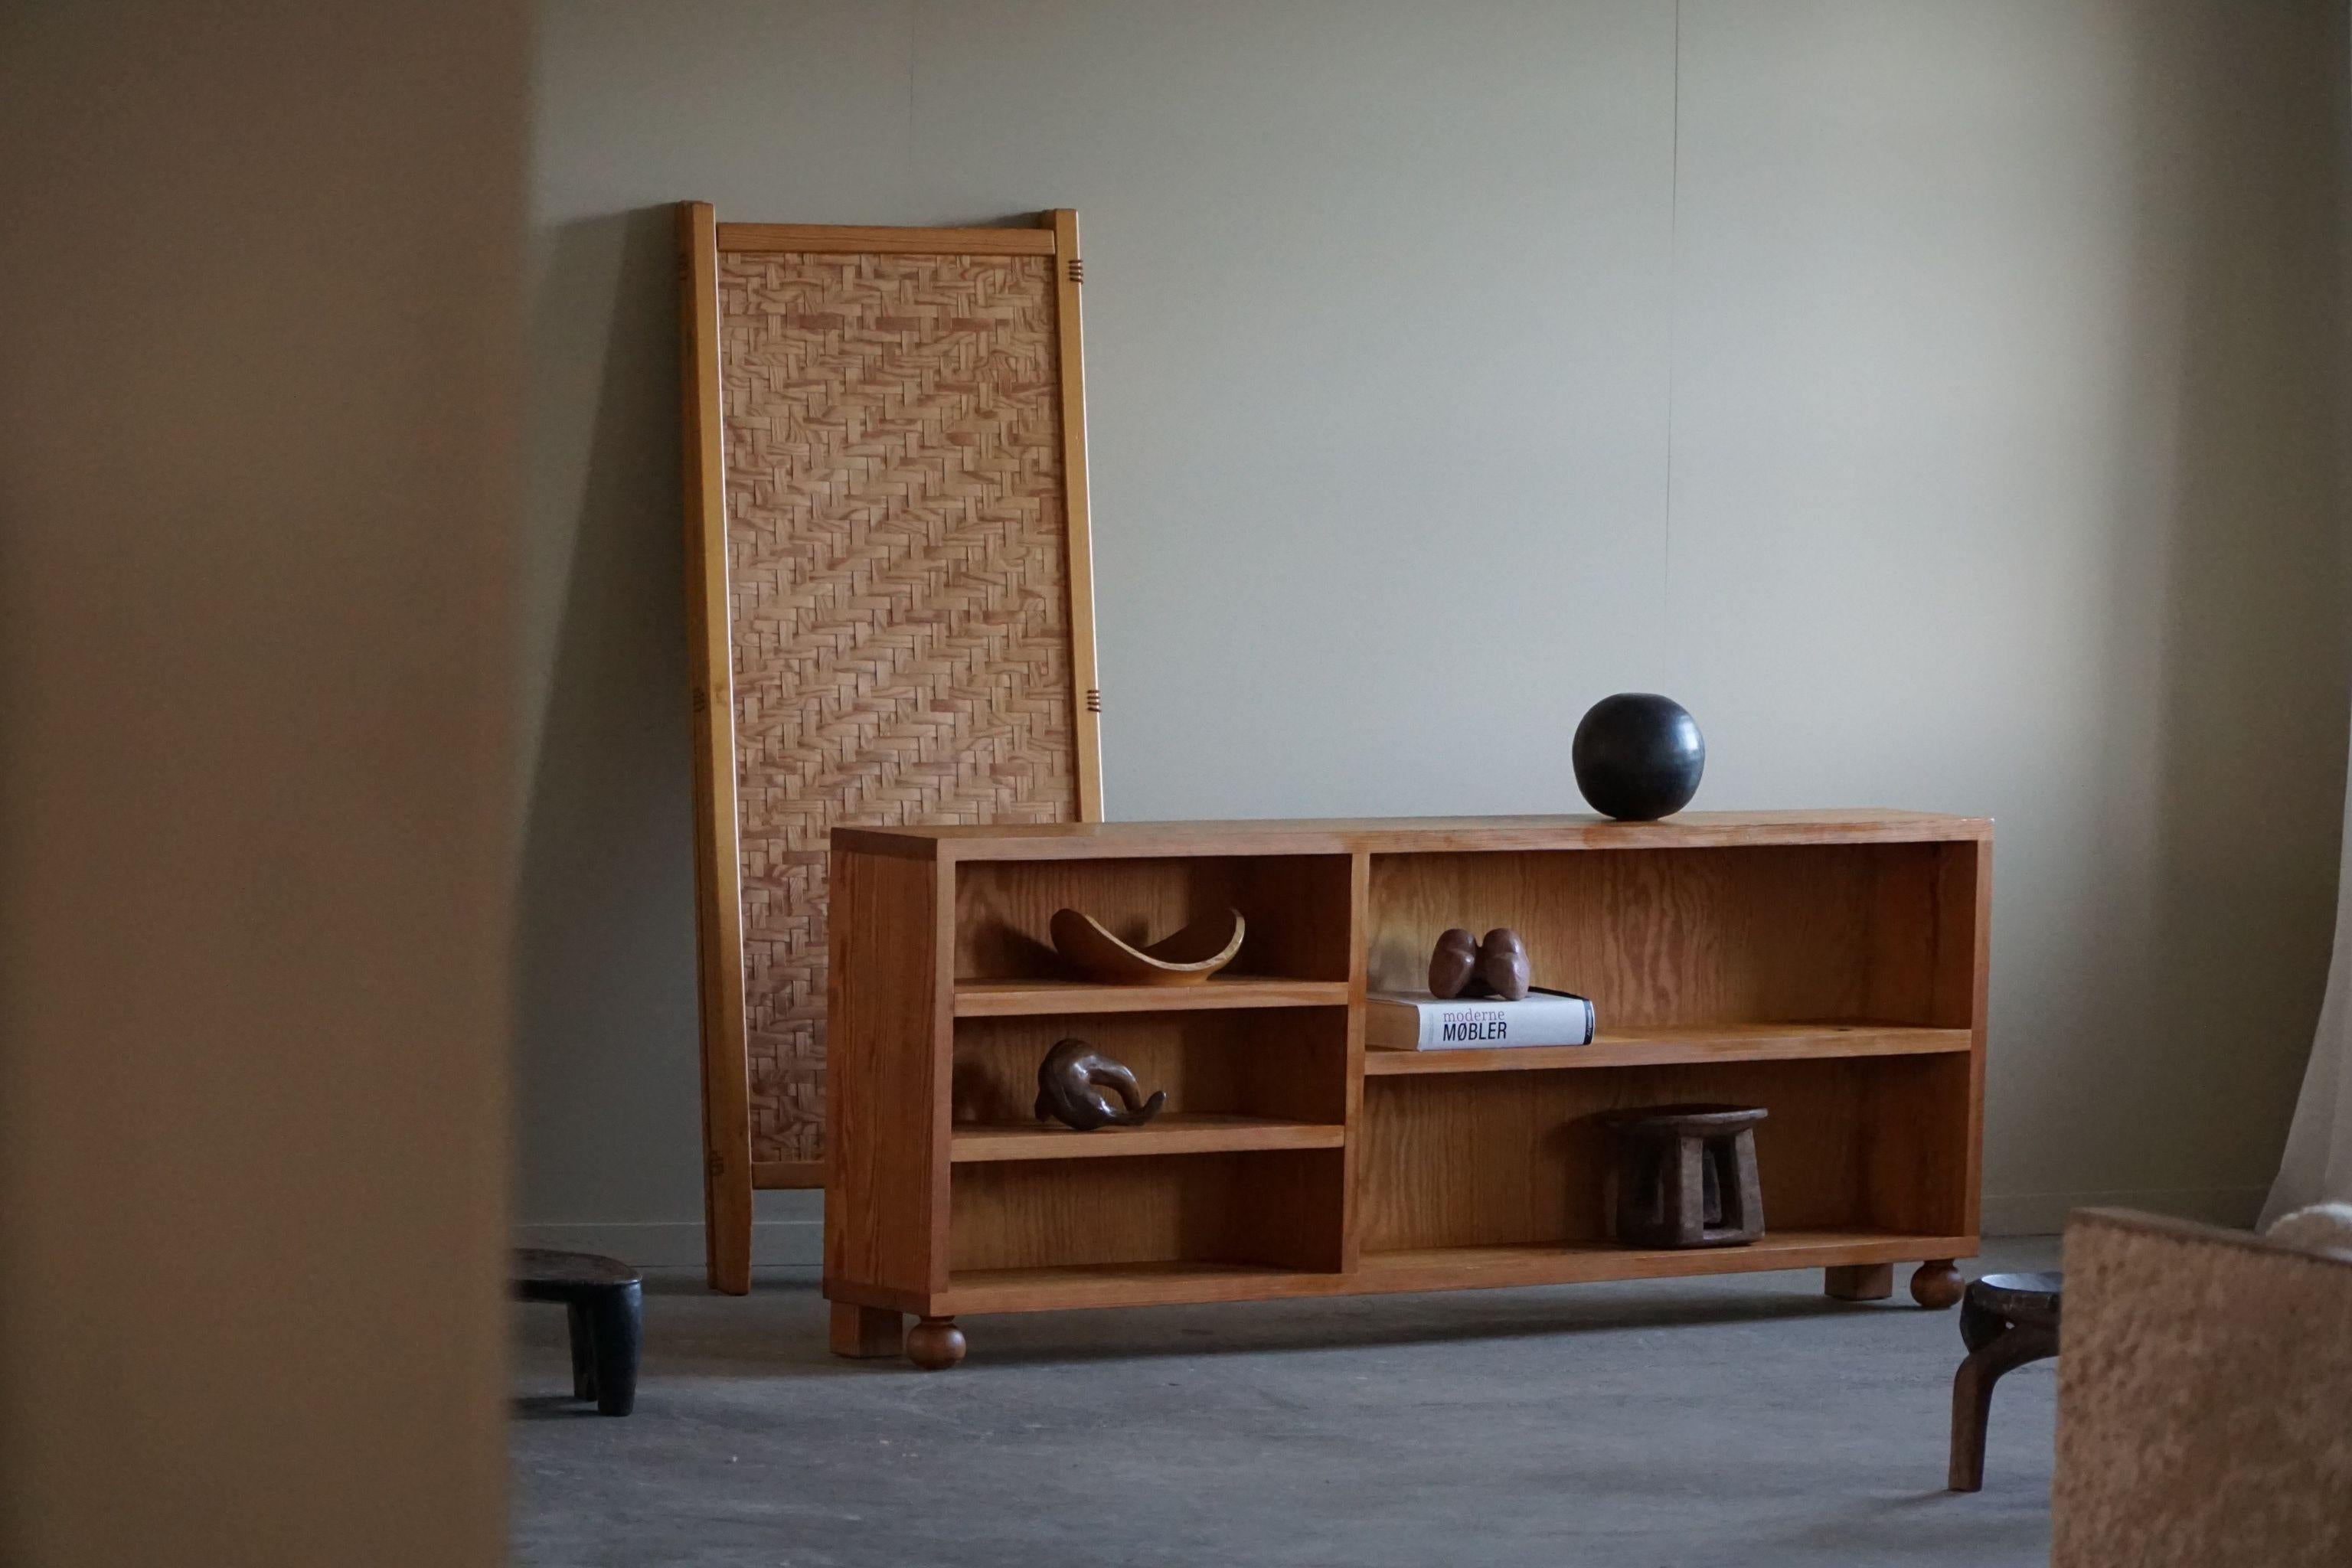 Das rechteckige Regal aus massivem Kiefernholz, das in den 1970er Jahren von einem dänischen Schreiner gefertigt wurde, ist ein zeitloses und funktionelles Möbelstück. Dieses Regal zeichnet sich durch klare Linien und ein minimalistisches Design aus